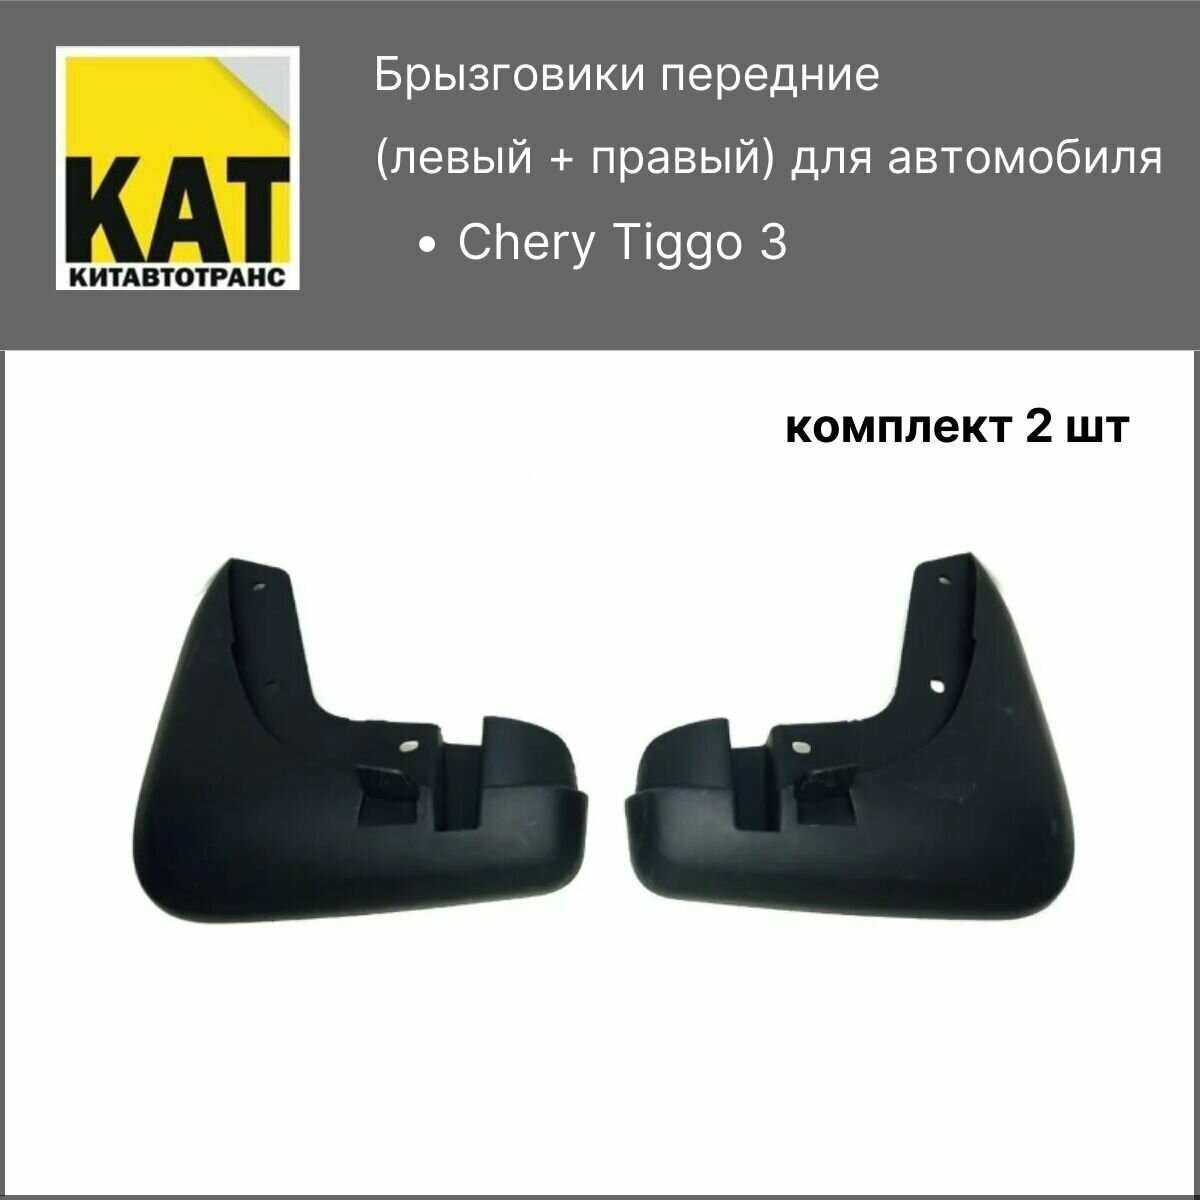 Брызговики передние Чери Тигго 3 (Chery Tiggo 3) комплект 2шт